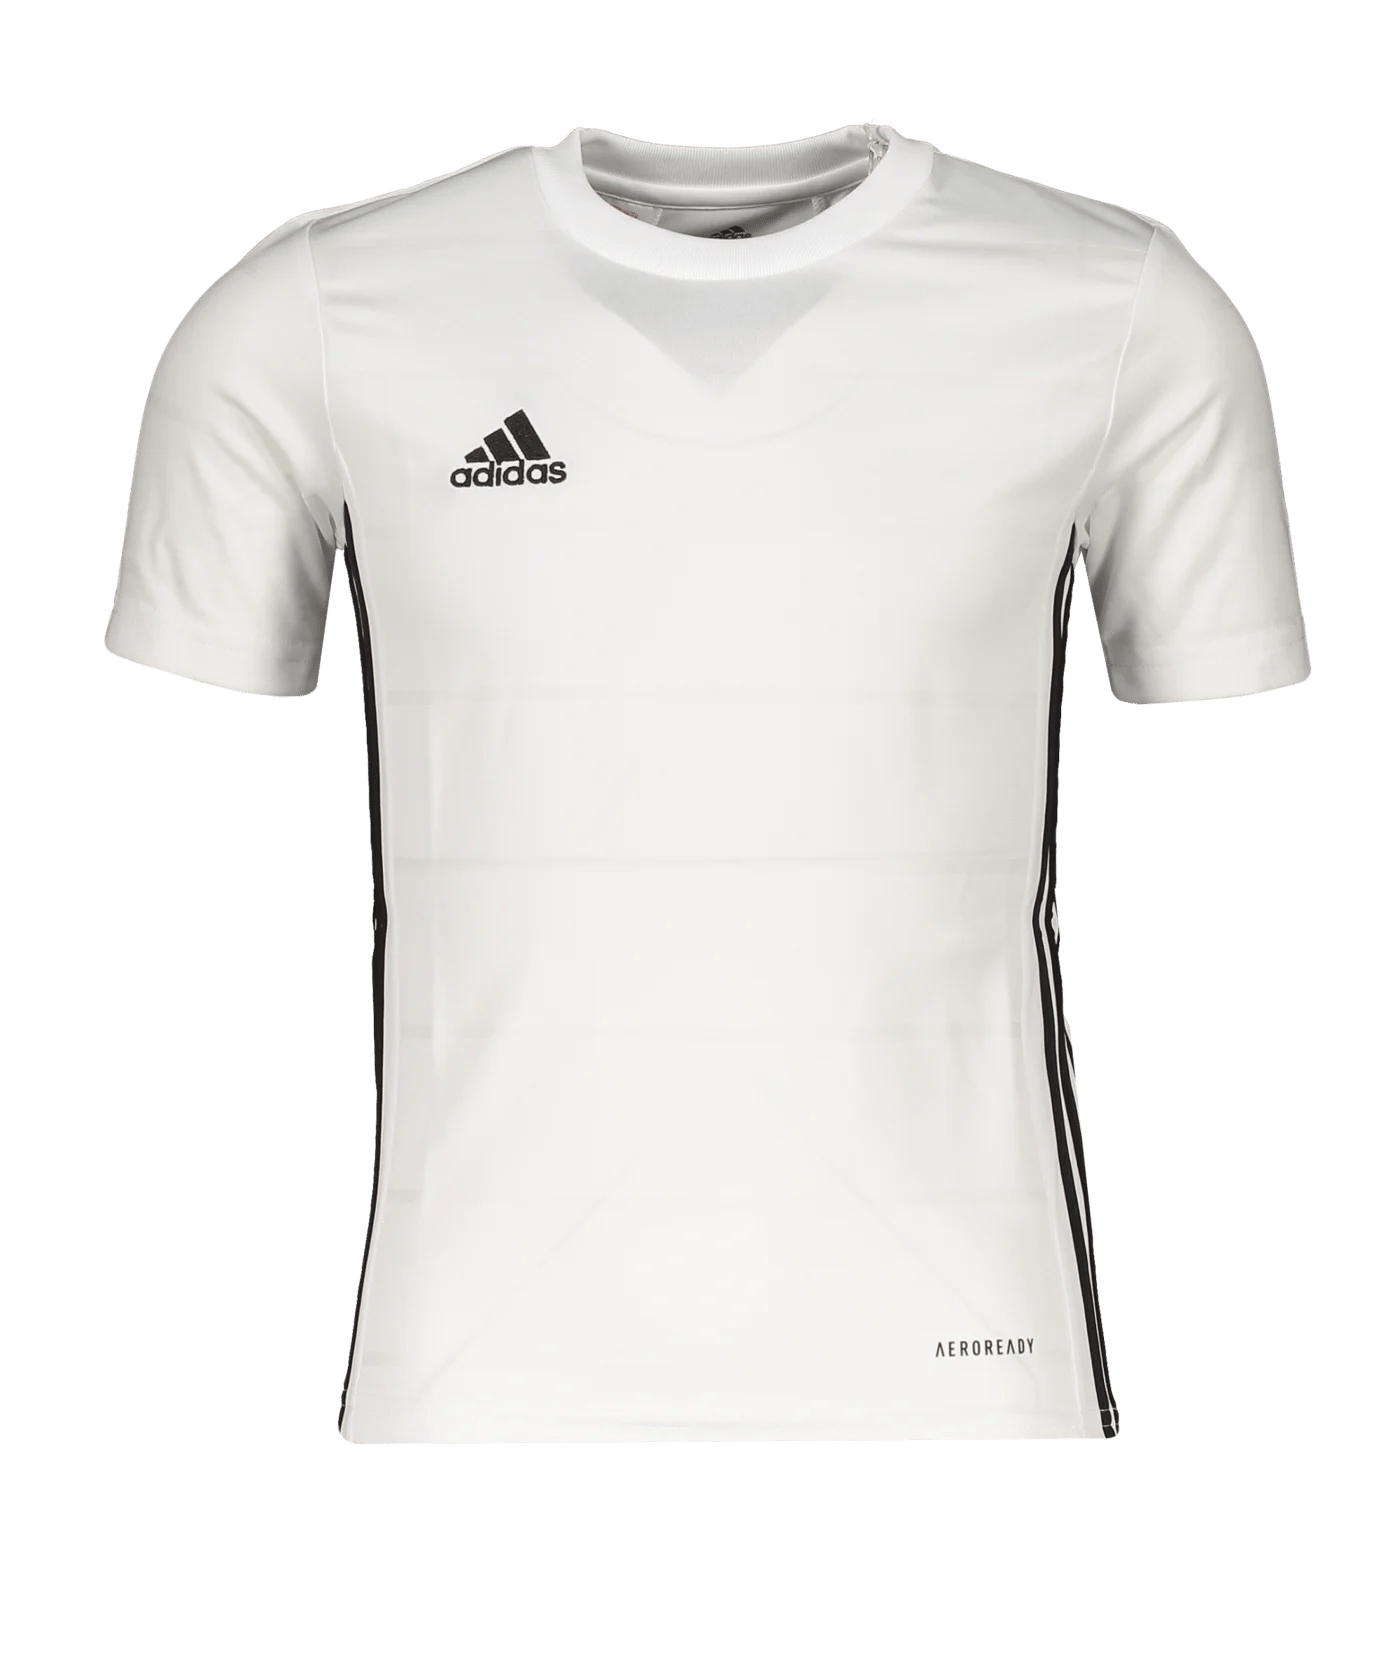 Adidas Kinder Trikot Campeon 21 weiß-schwarz